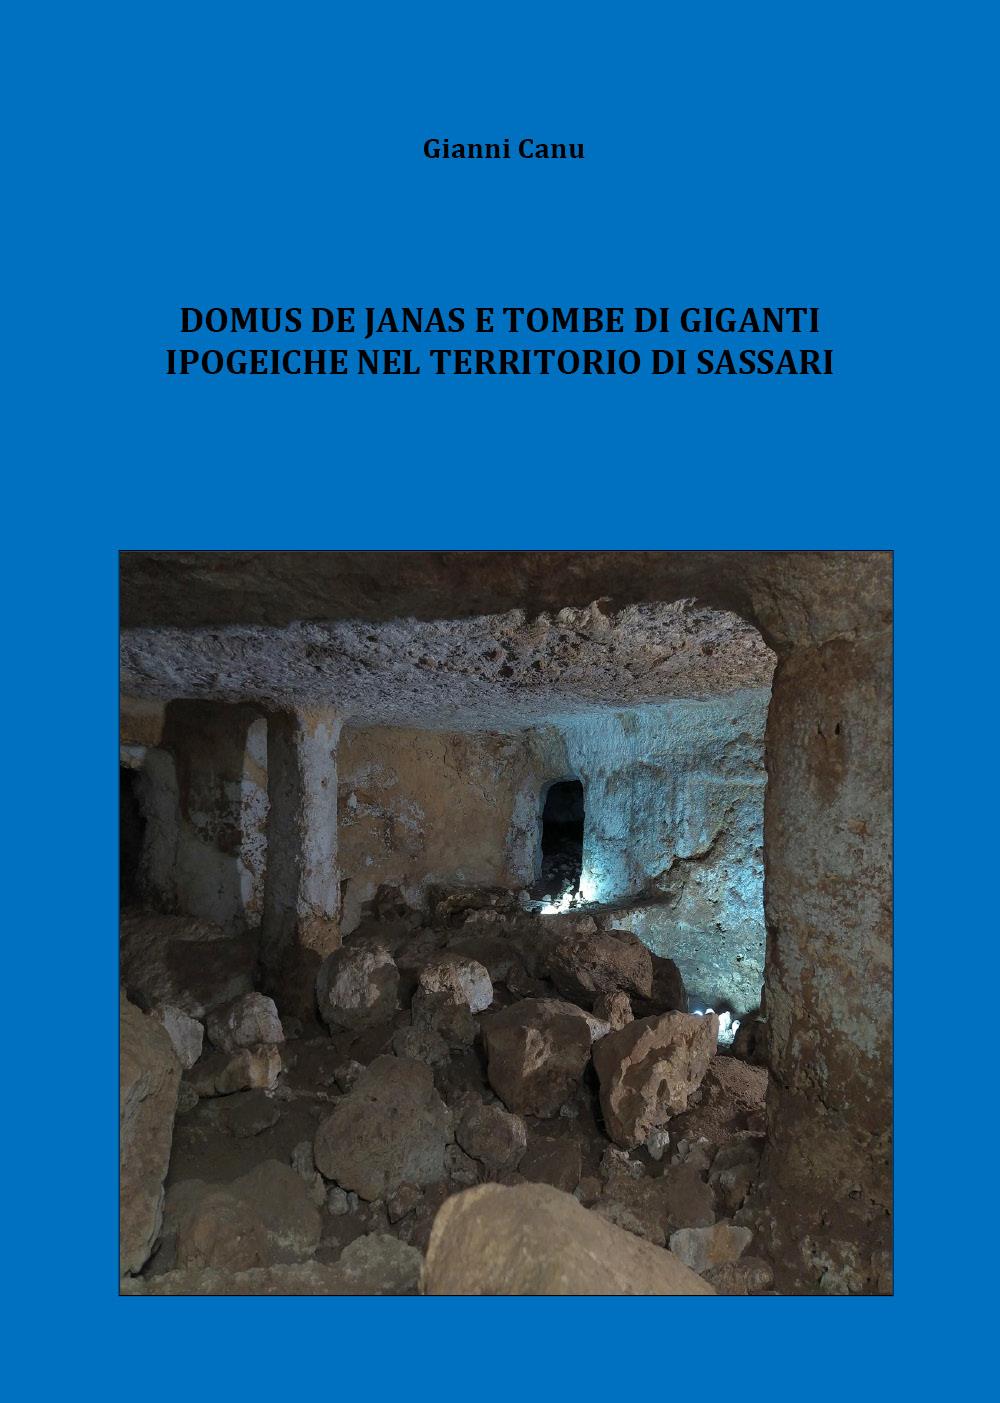 Domus de janas e tombe di giganti ipogeiche nel territorio di Sassari